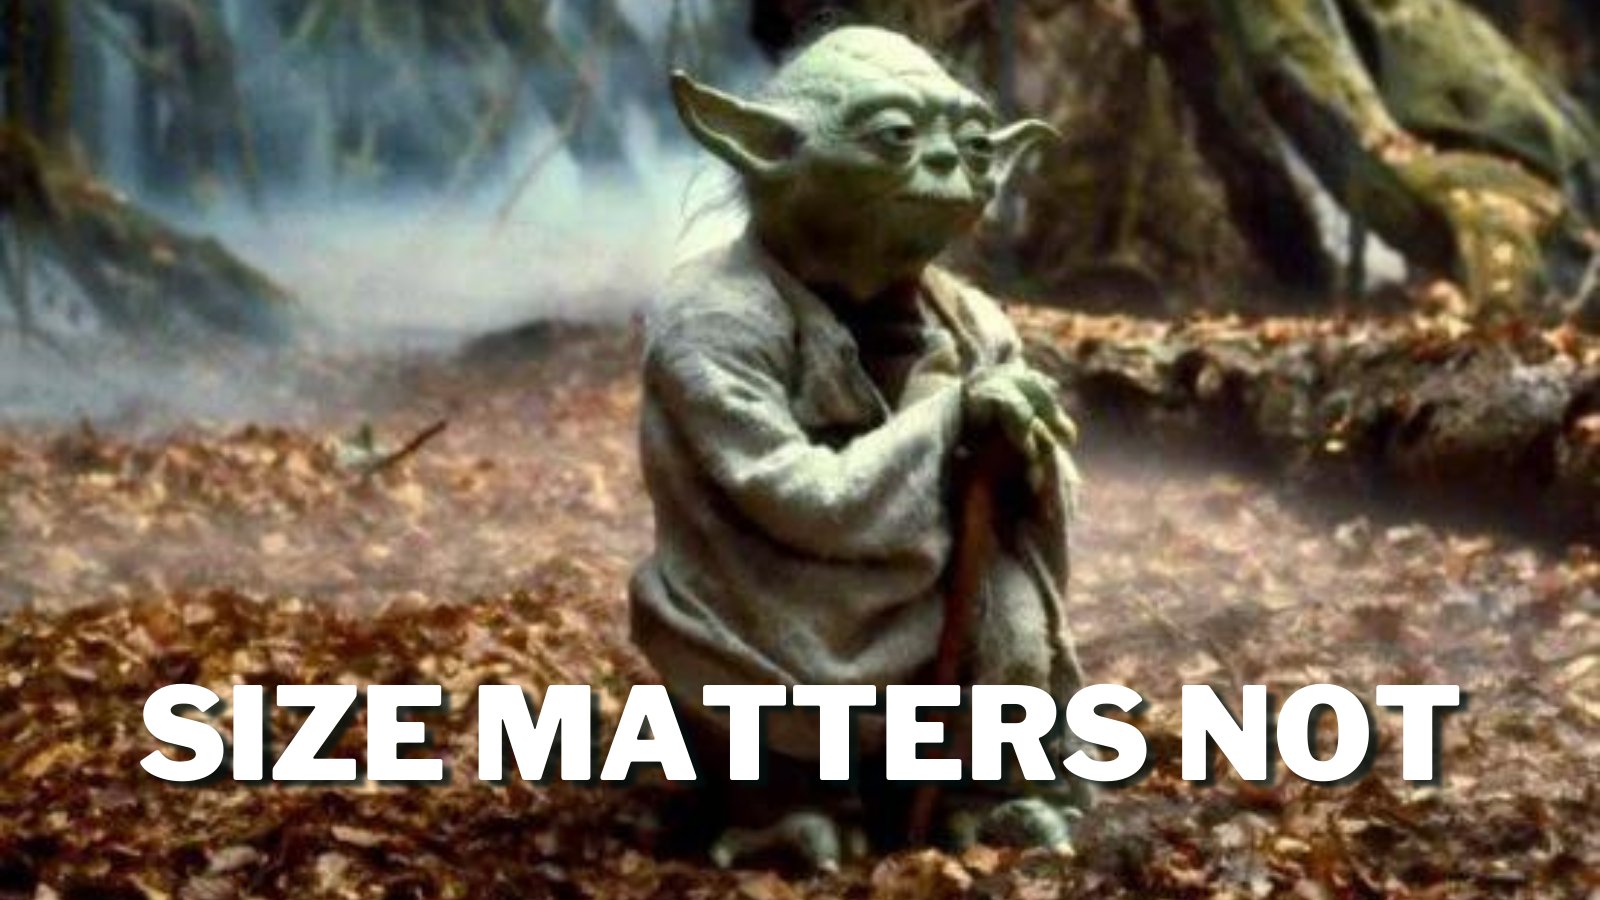 Yoda: "Size matters not."